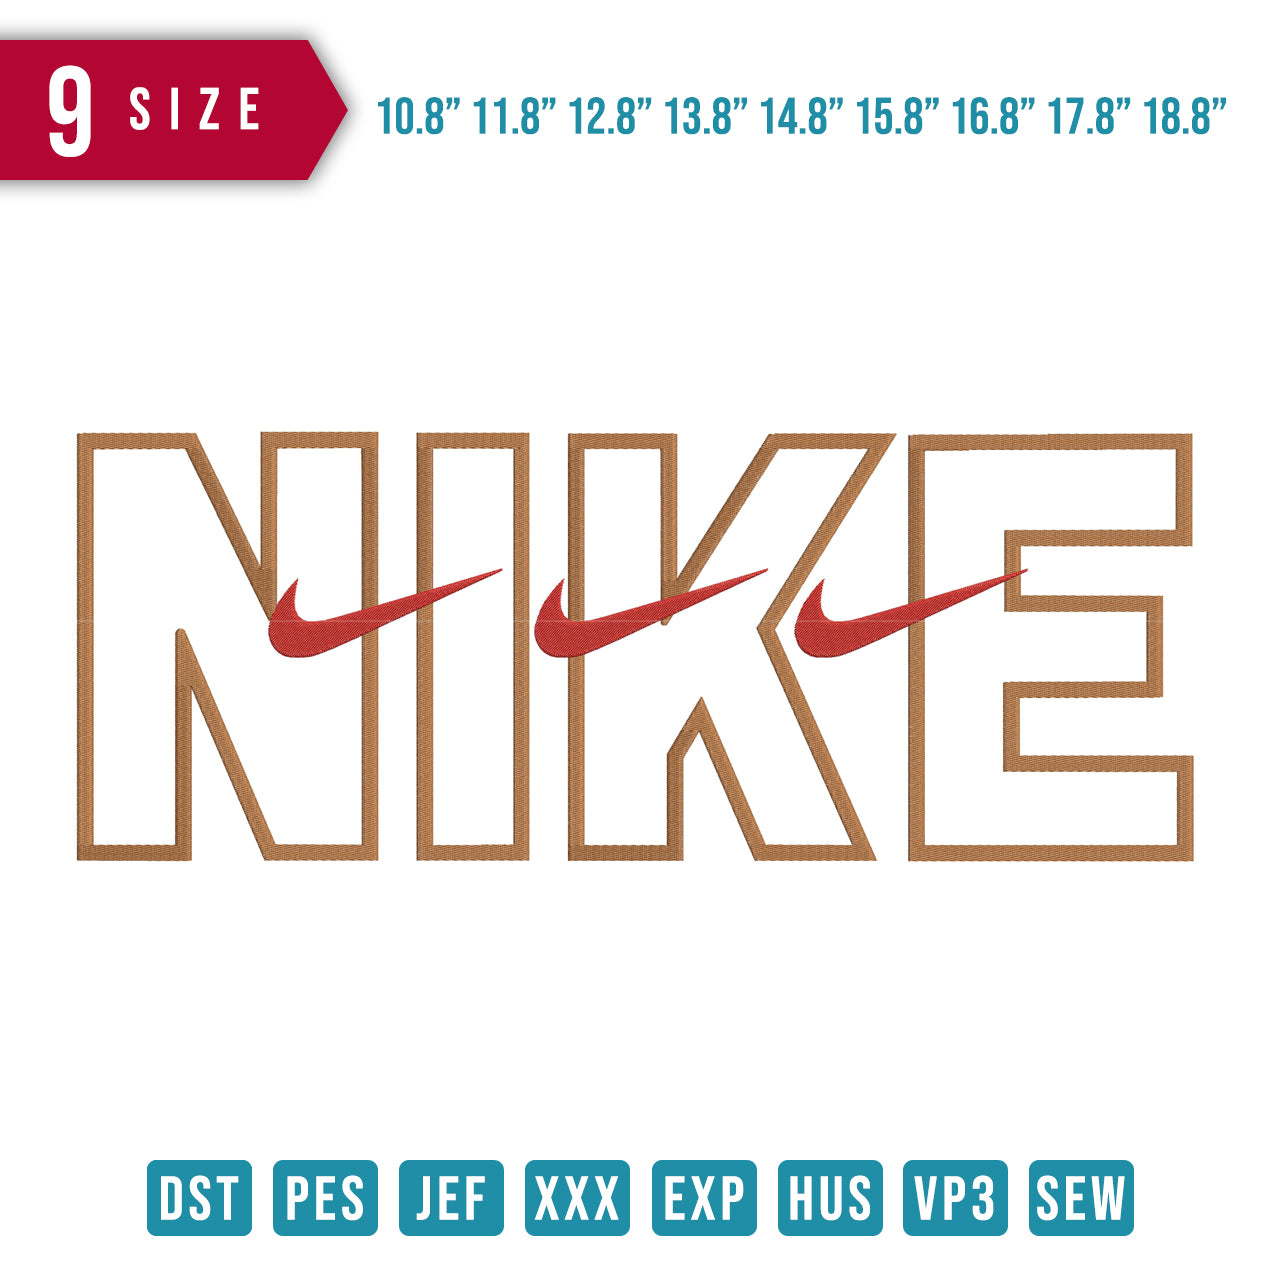 Nike Triple swoosh BIG 9 size